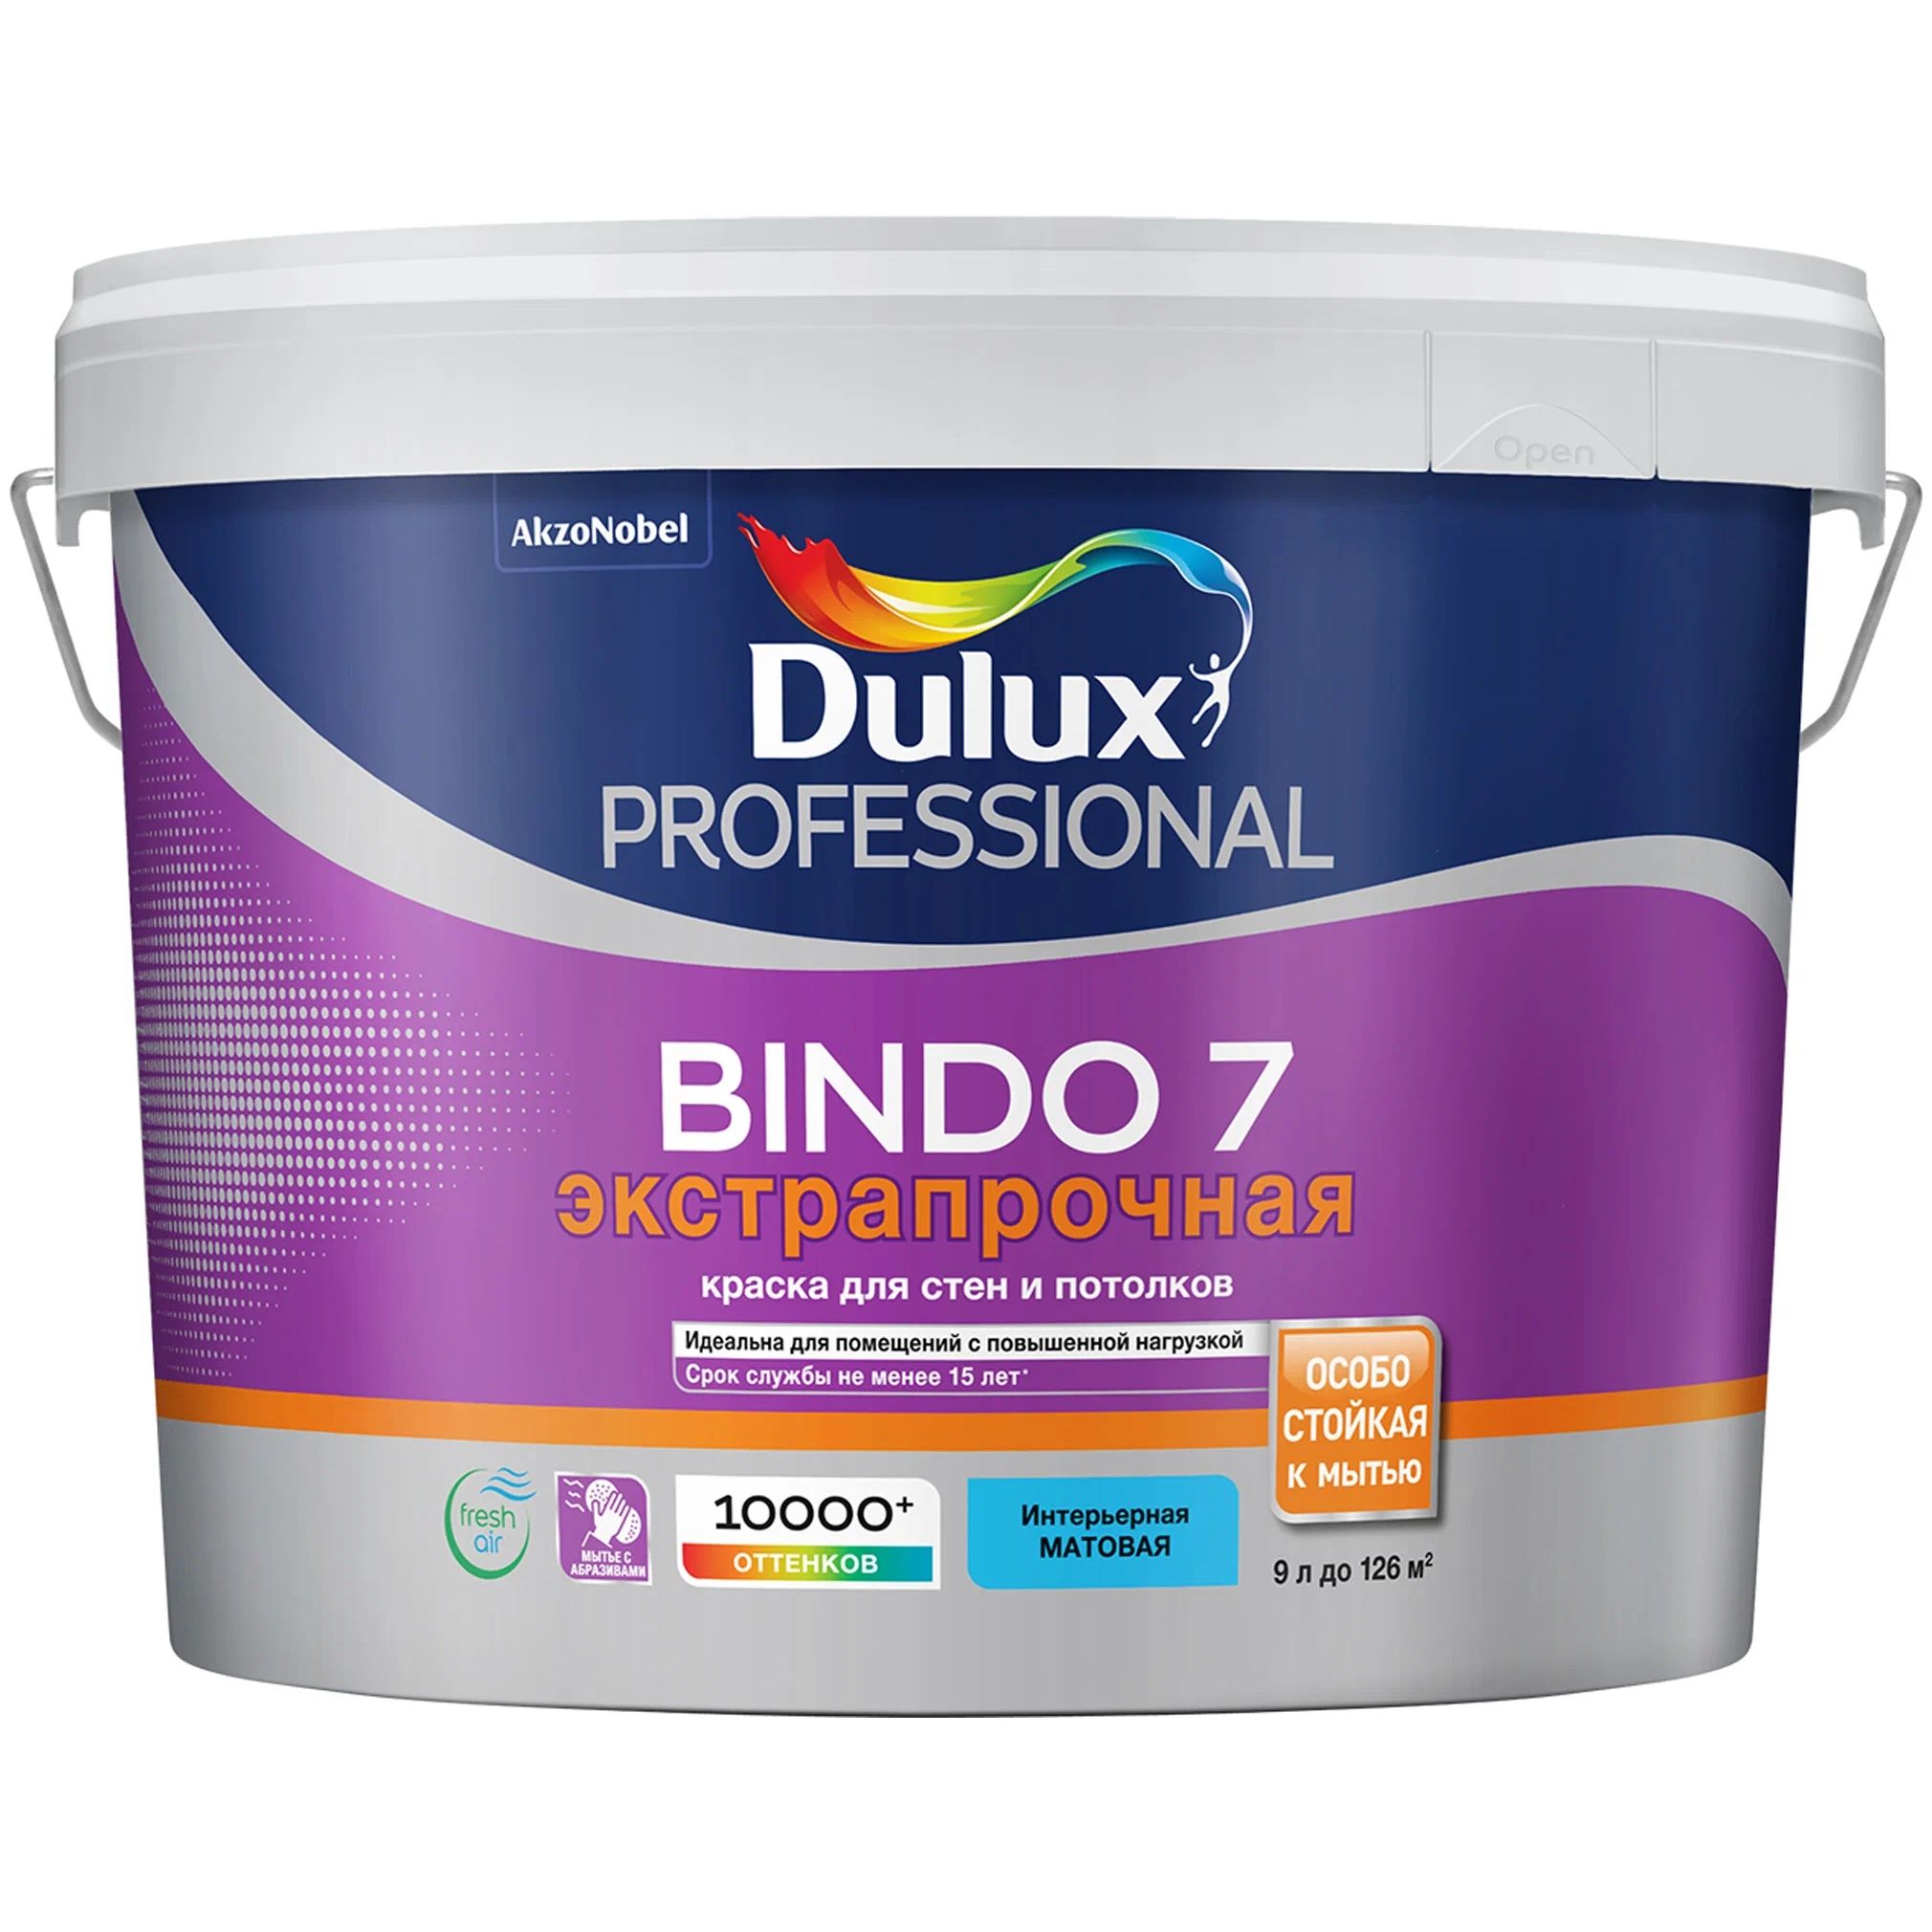 Краска для стен и потолков Dulux Professional Bindo 7, износостойкая, матовая, база BW 9 л набор ведер fantom professional